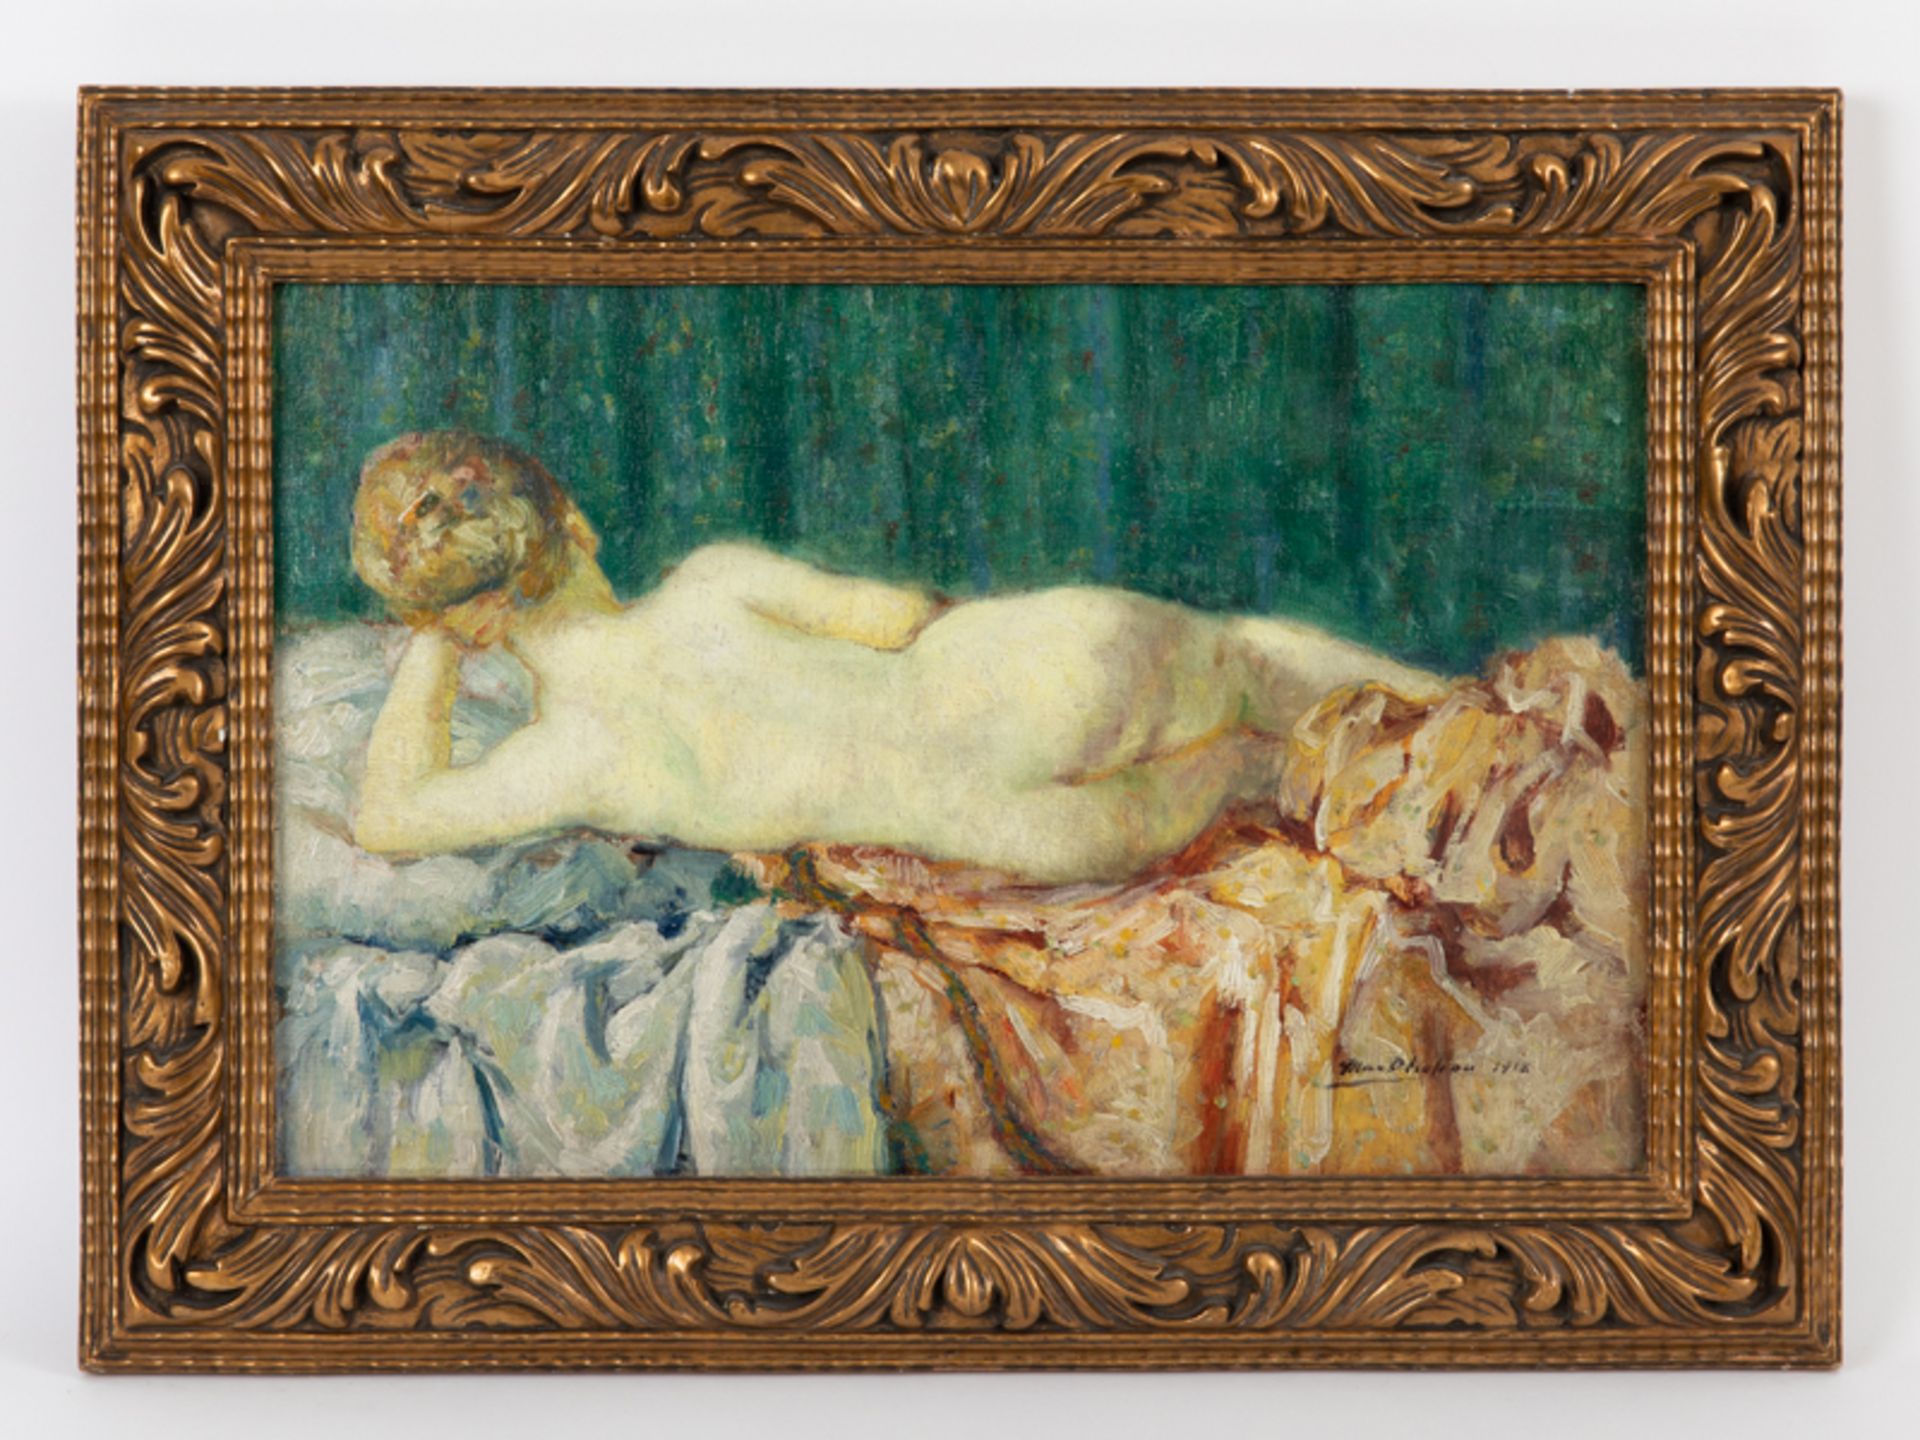 Chotiau, Max (1881 - 1968) Öl auf Holz; Rückenakt im impressionistischem Stile einer Dame mit